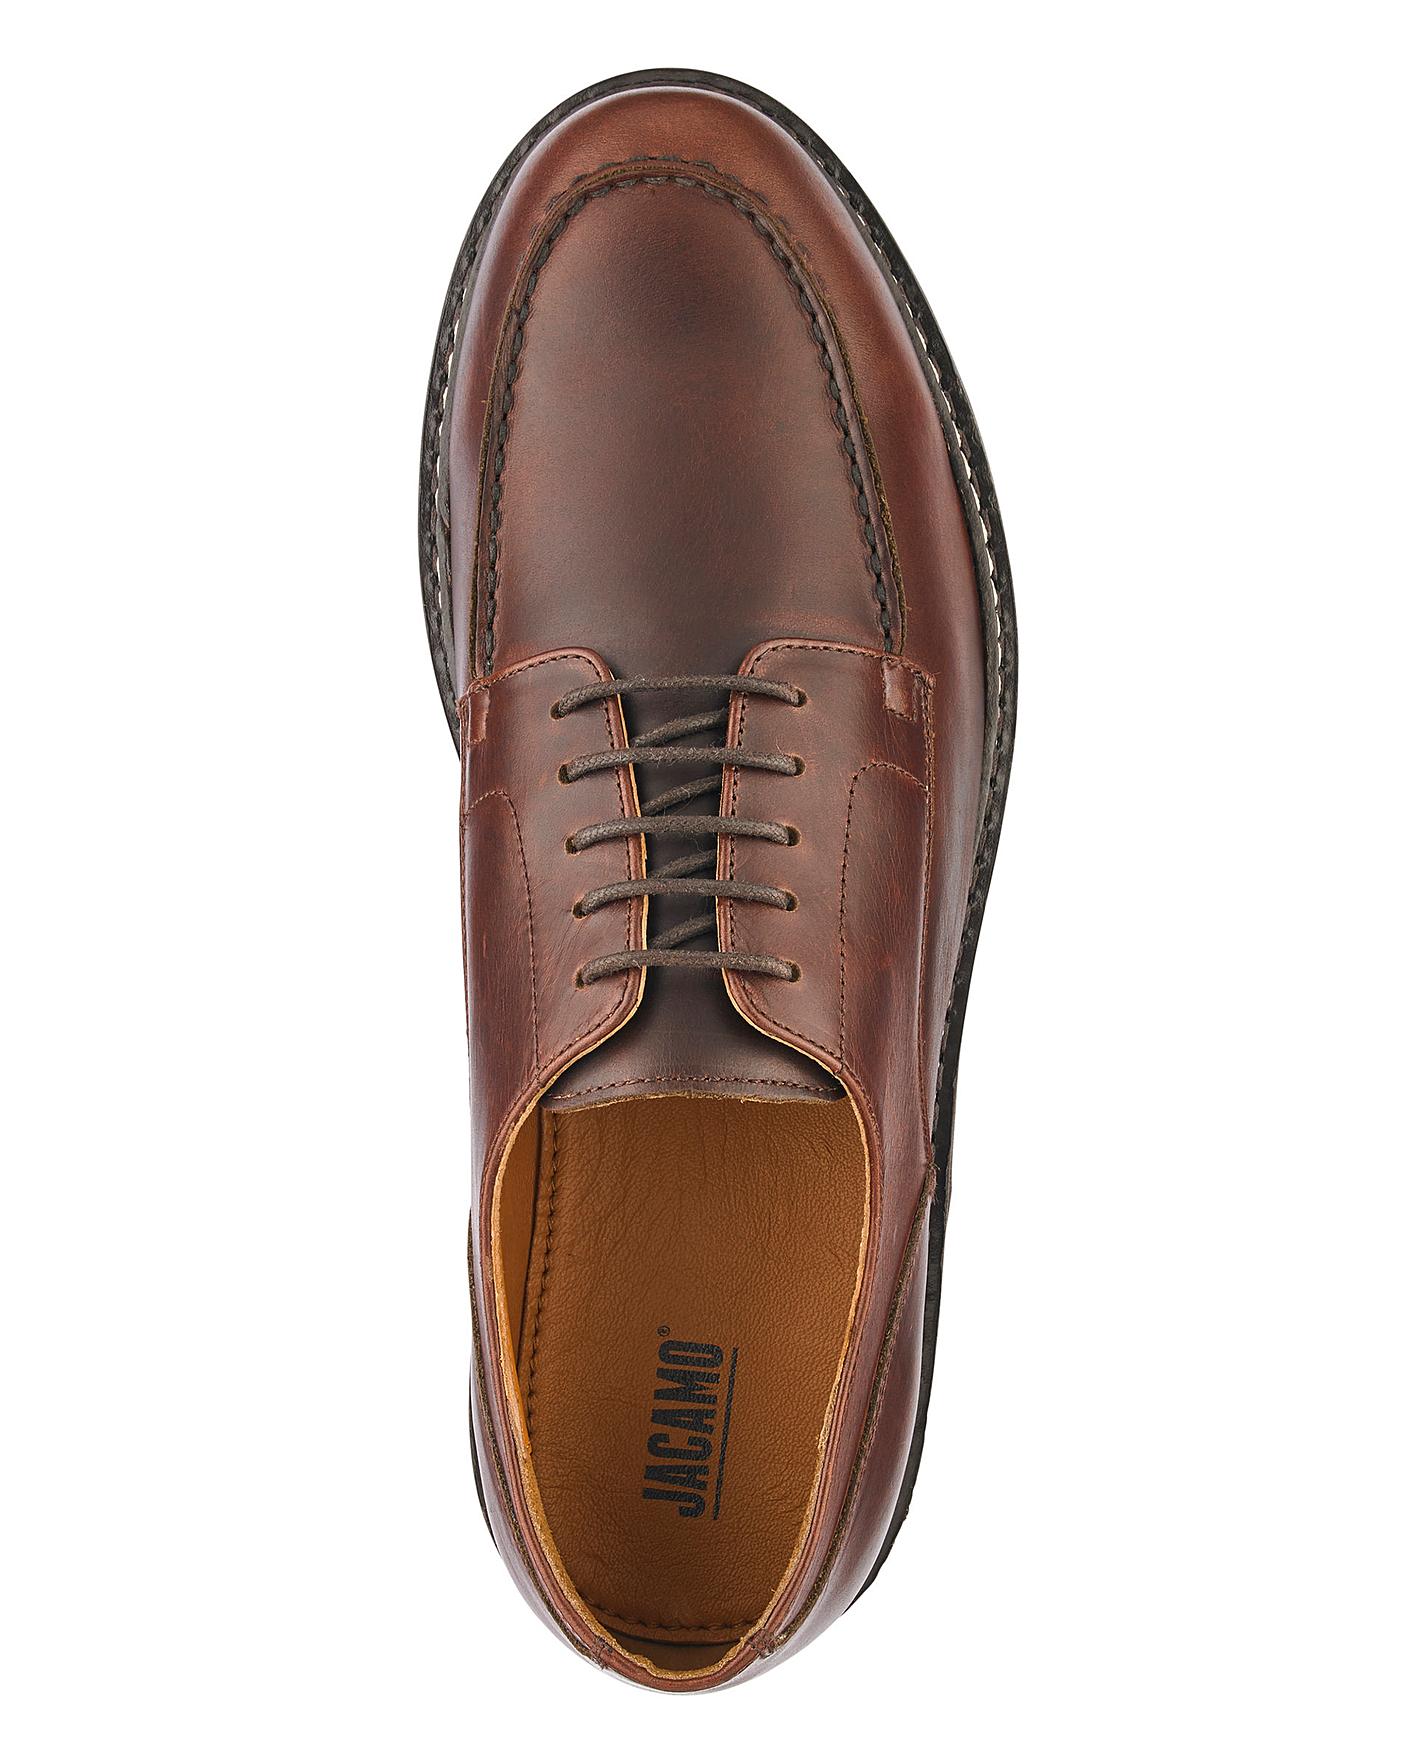 Jacamo Leather Apron Front Shoe Standard | Jacamo